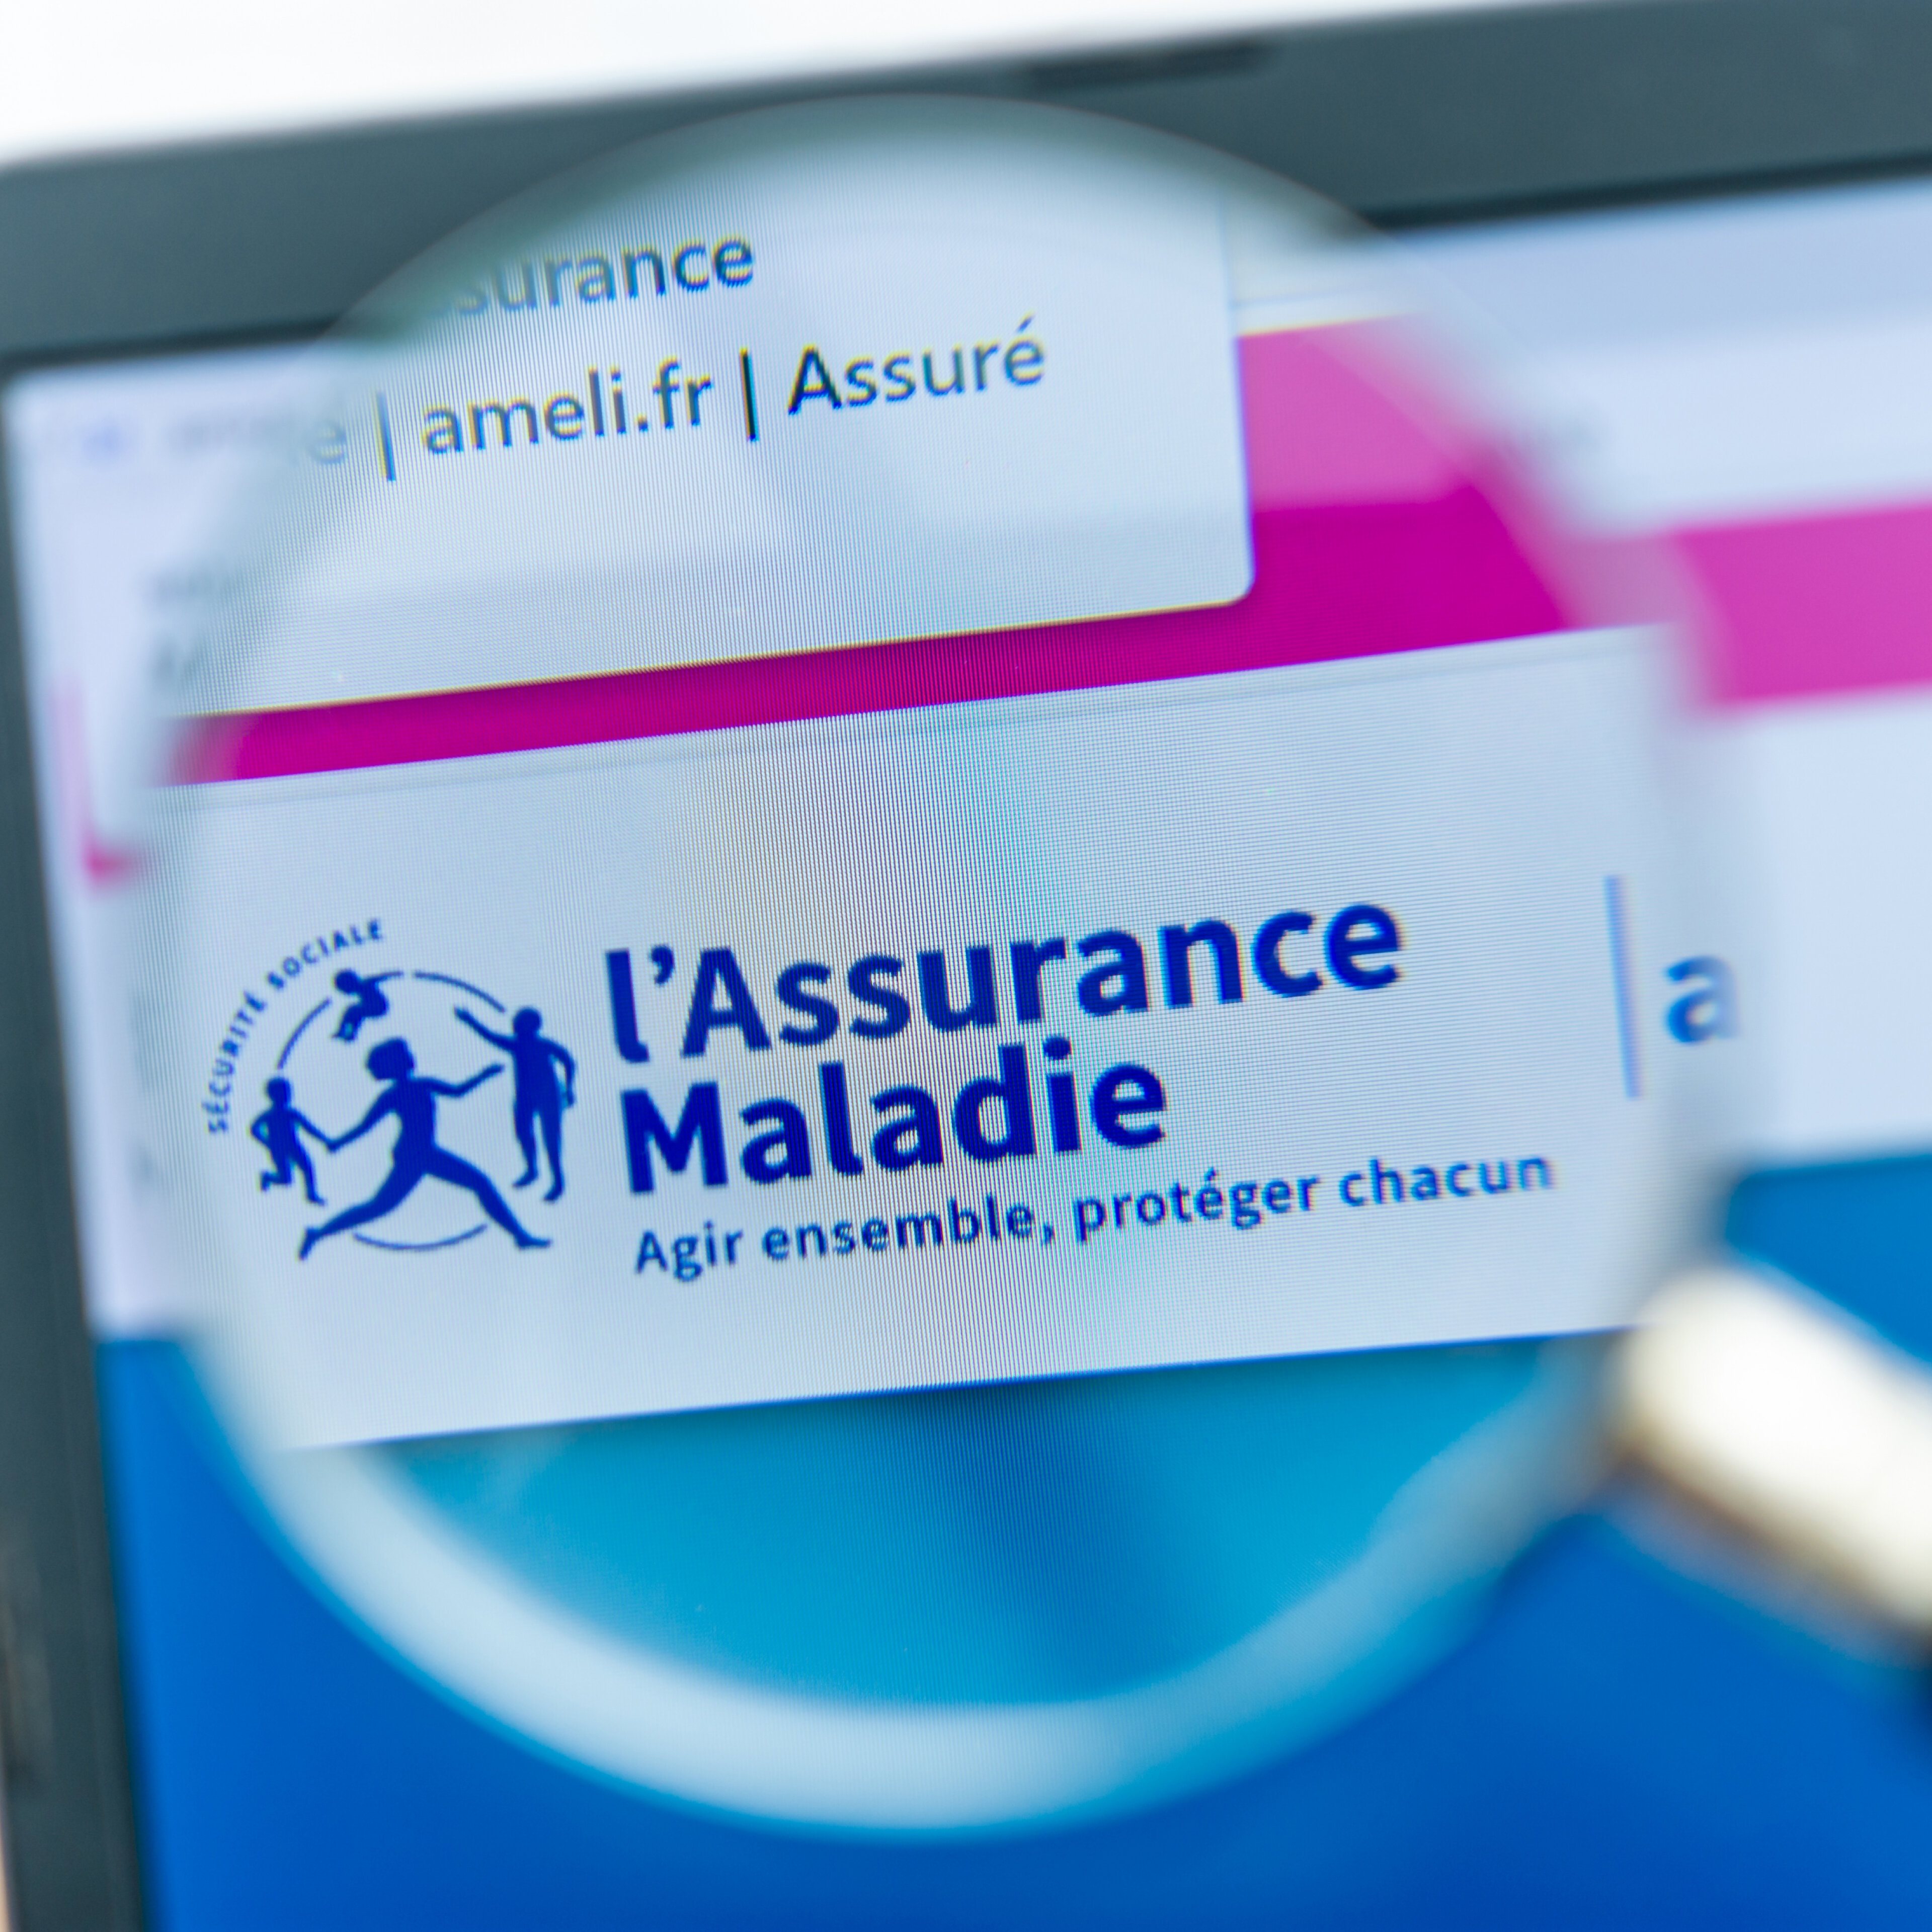 Site "ameli.fr" de l'Assurance Maladie française permettant d'effectuer la plupart des procédures administratives d'assurance maladie en ligne